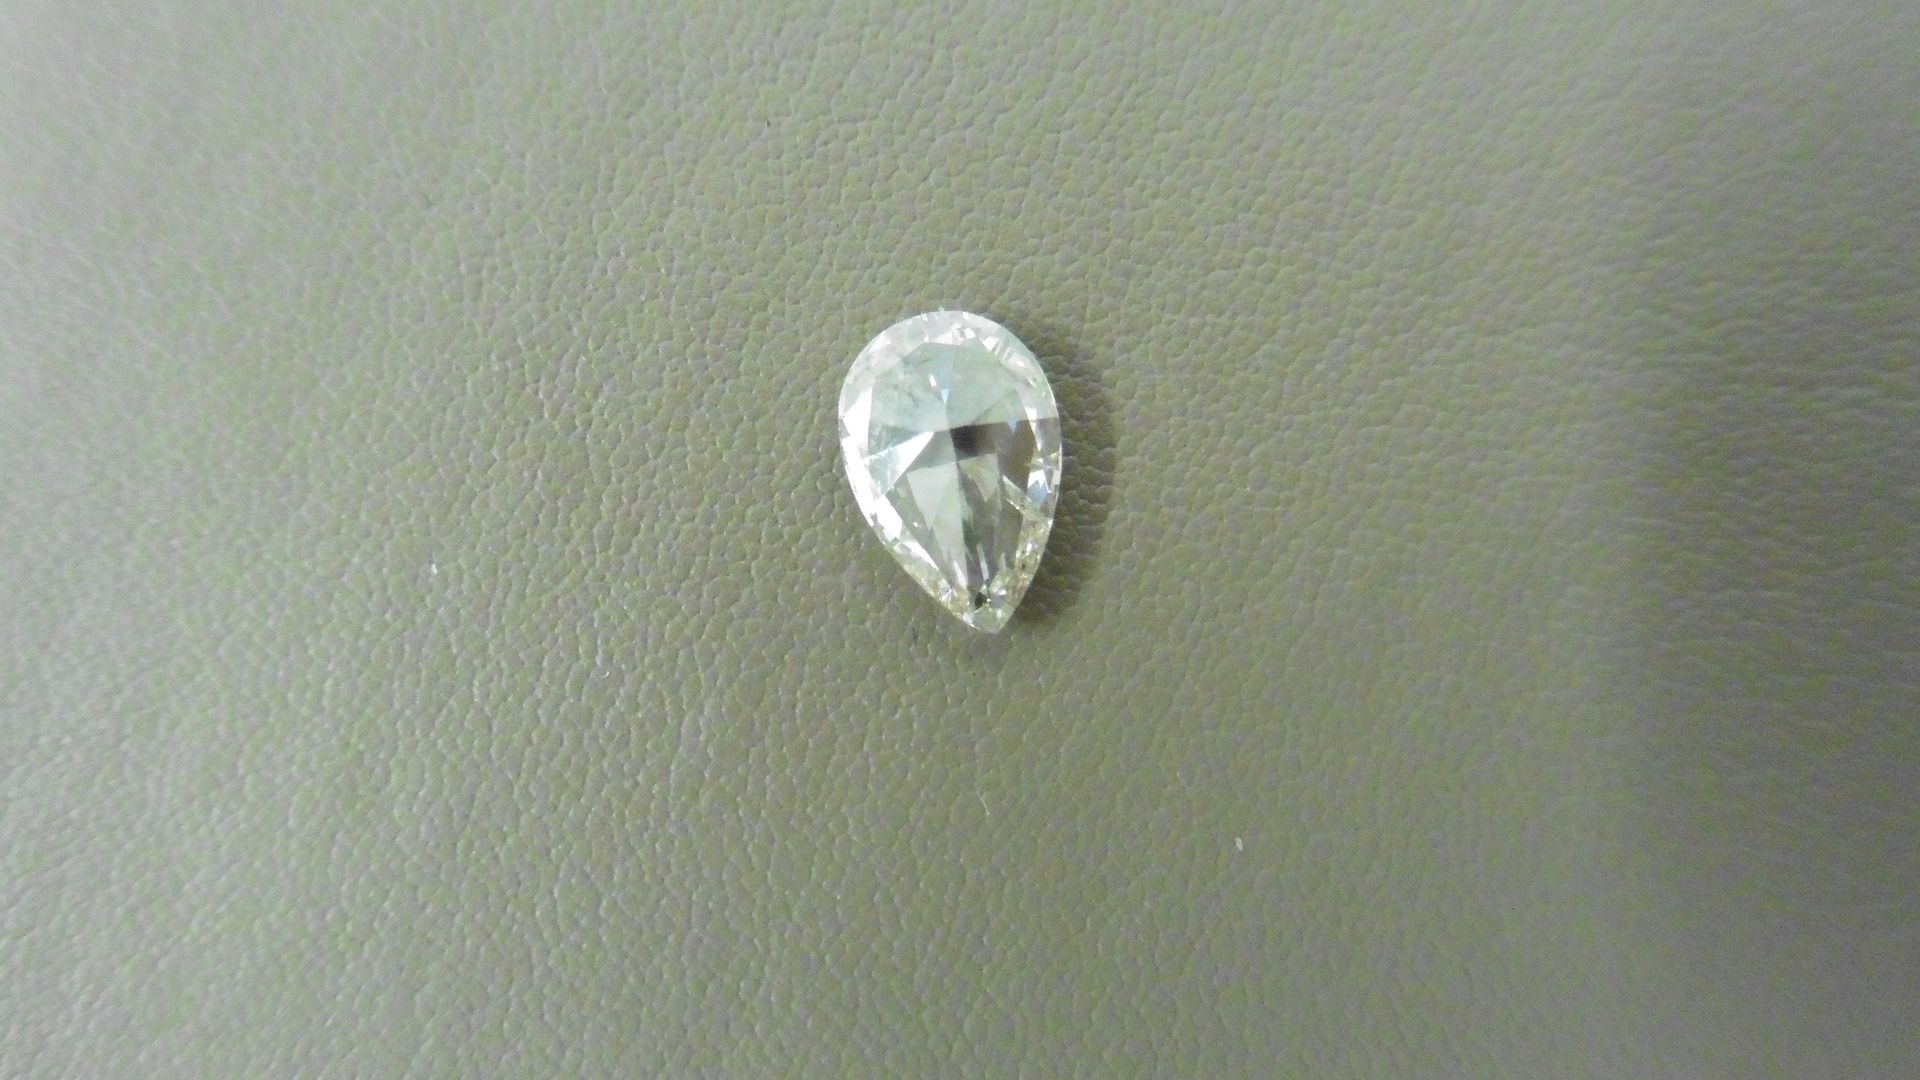 1.00ct pear shaped diamond, loose stone. J colour and I1 clarity. 8.85 x 5.93 x 2.72mm. IGI